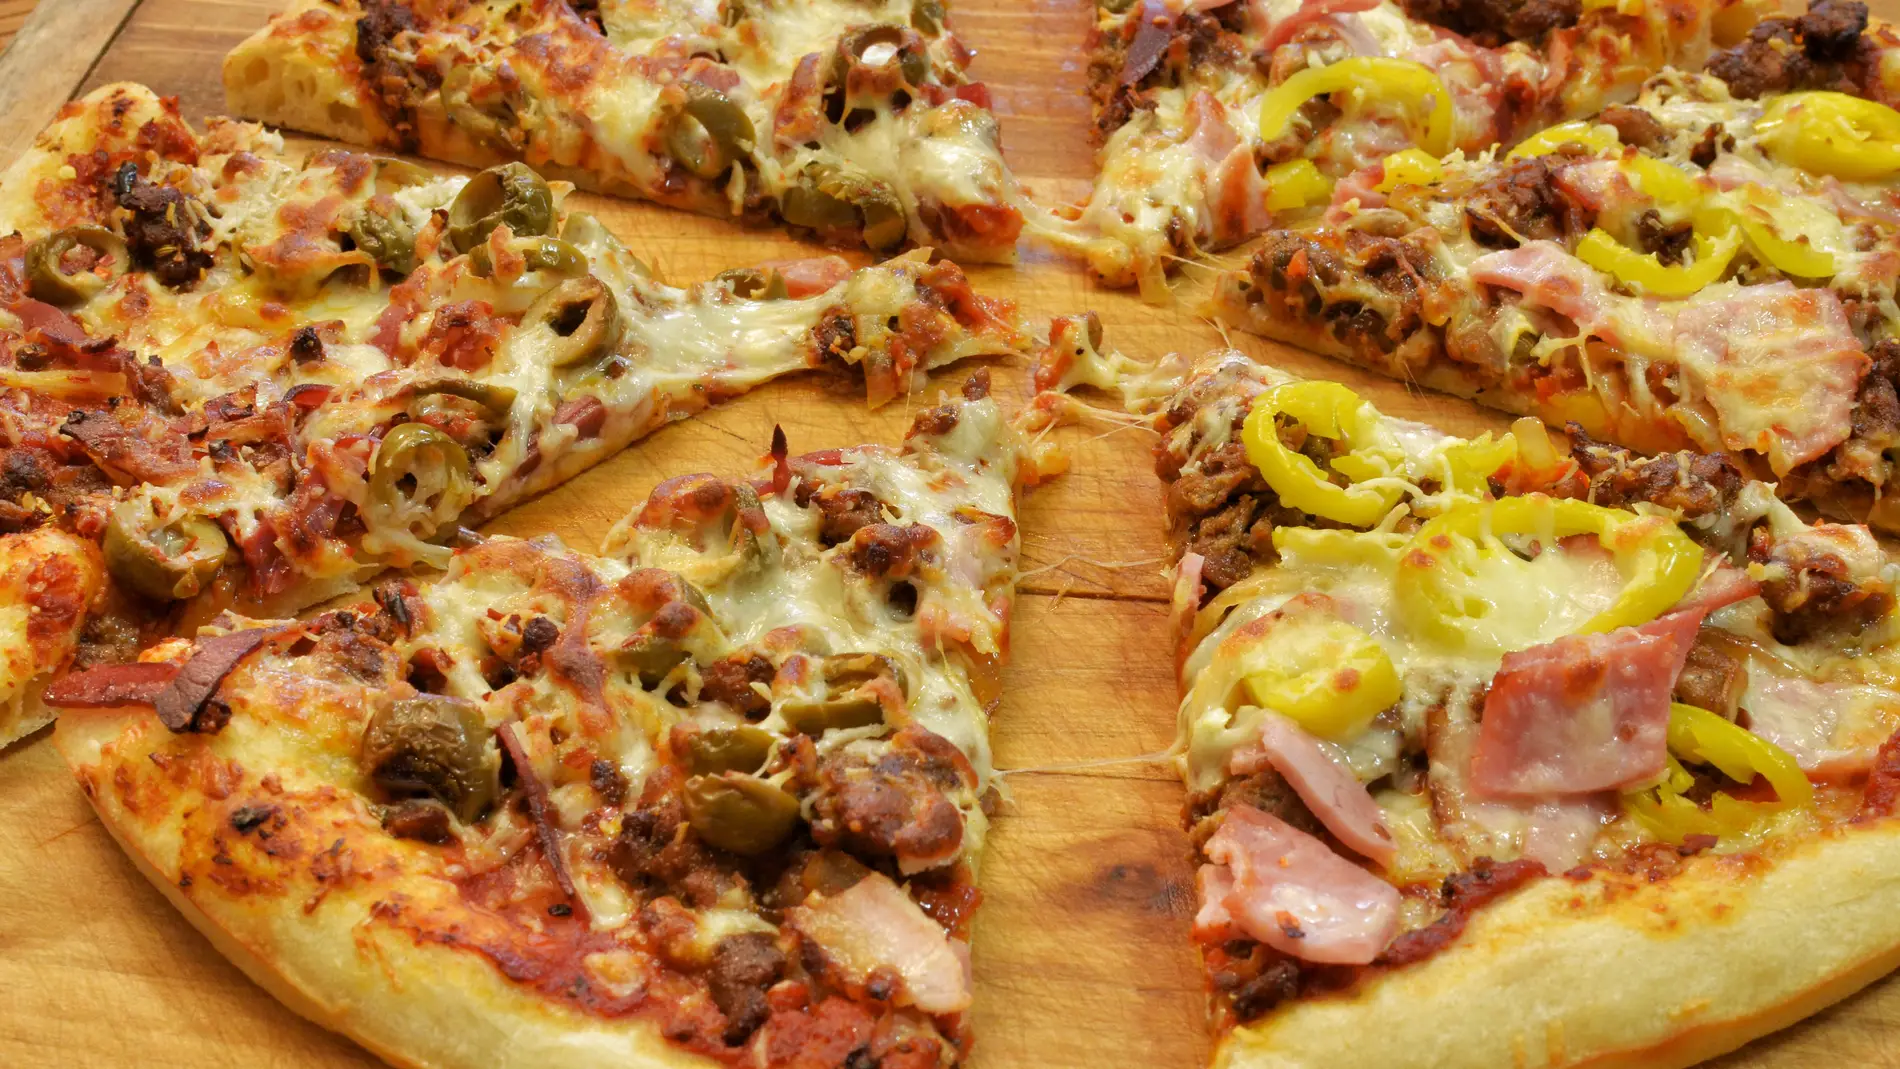 La pizza y sus porciones: un asunto serio.